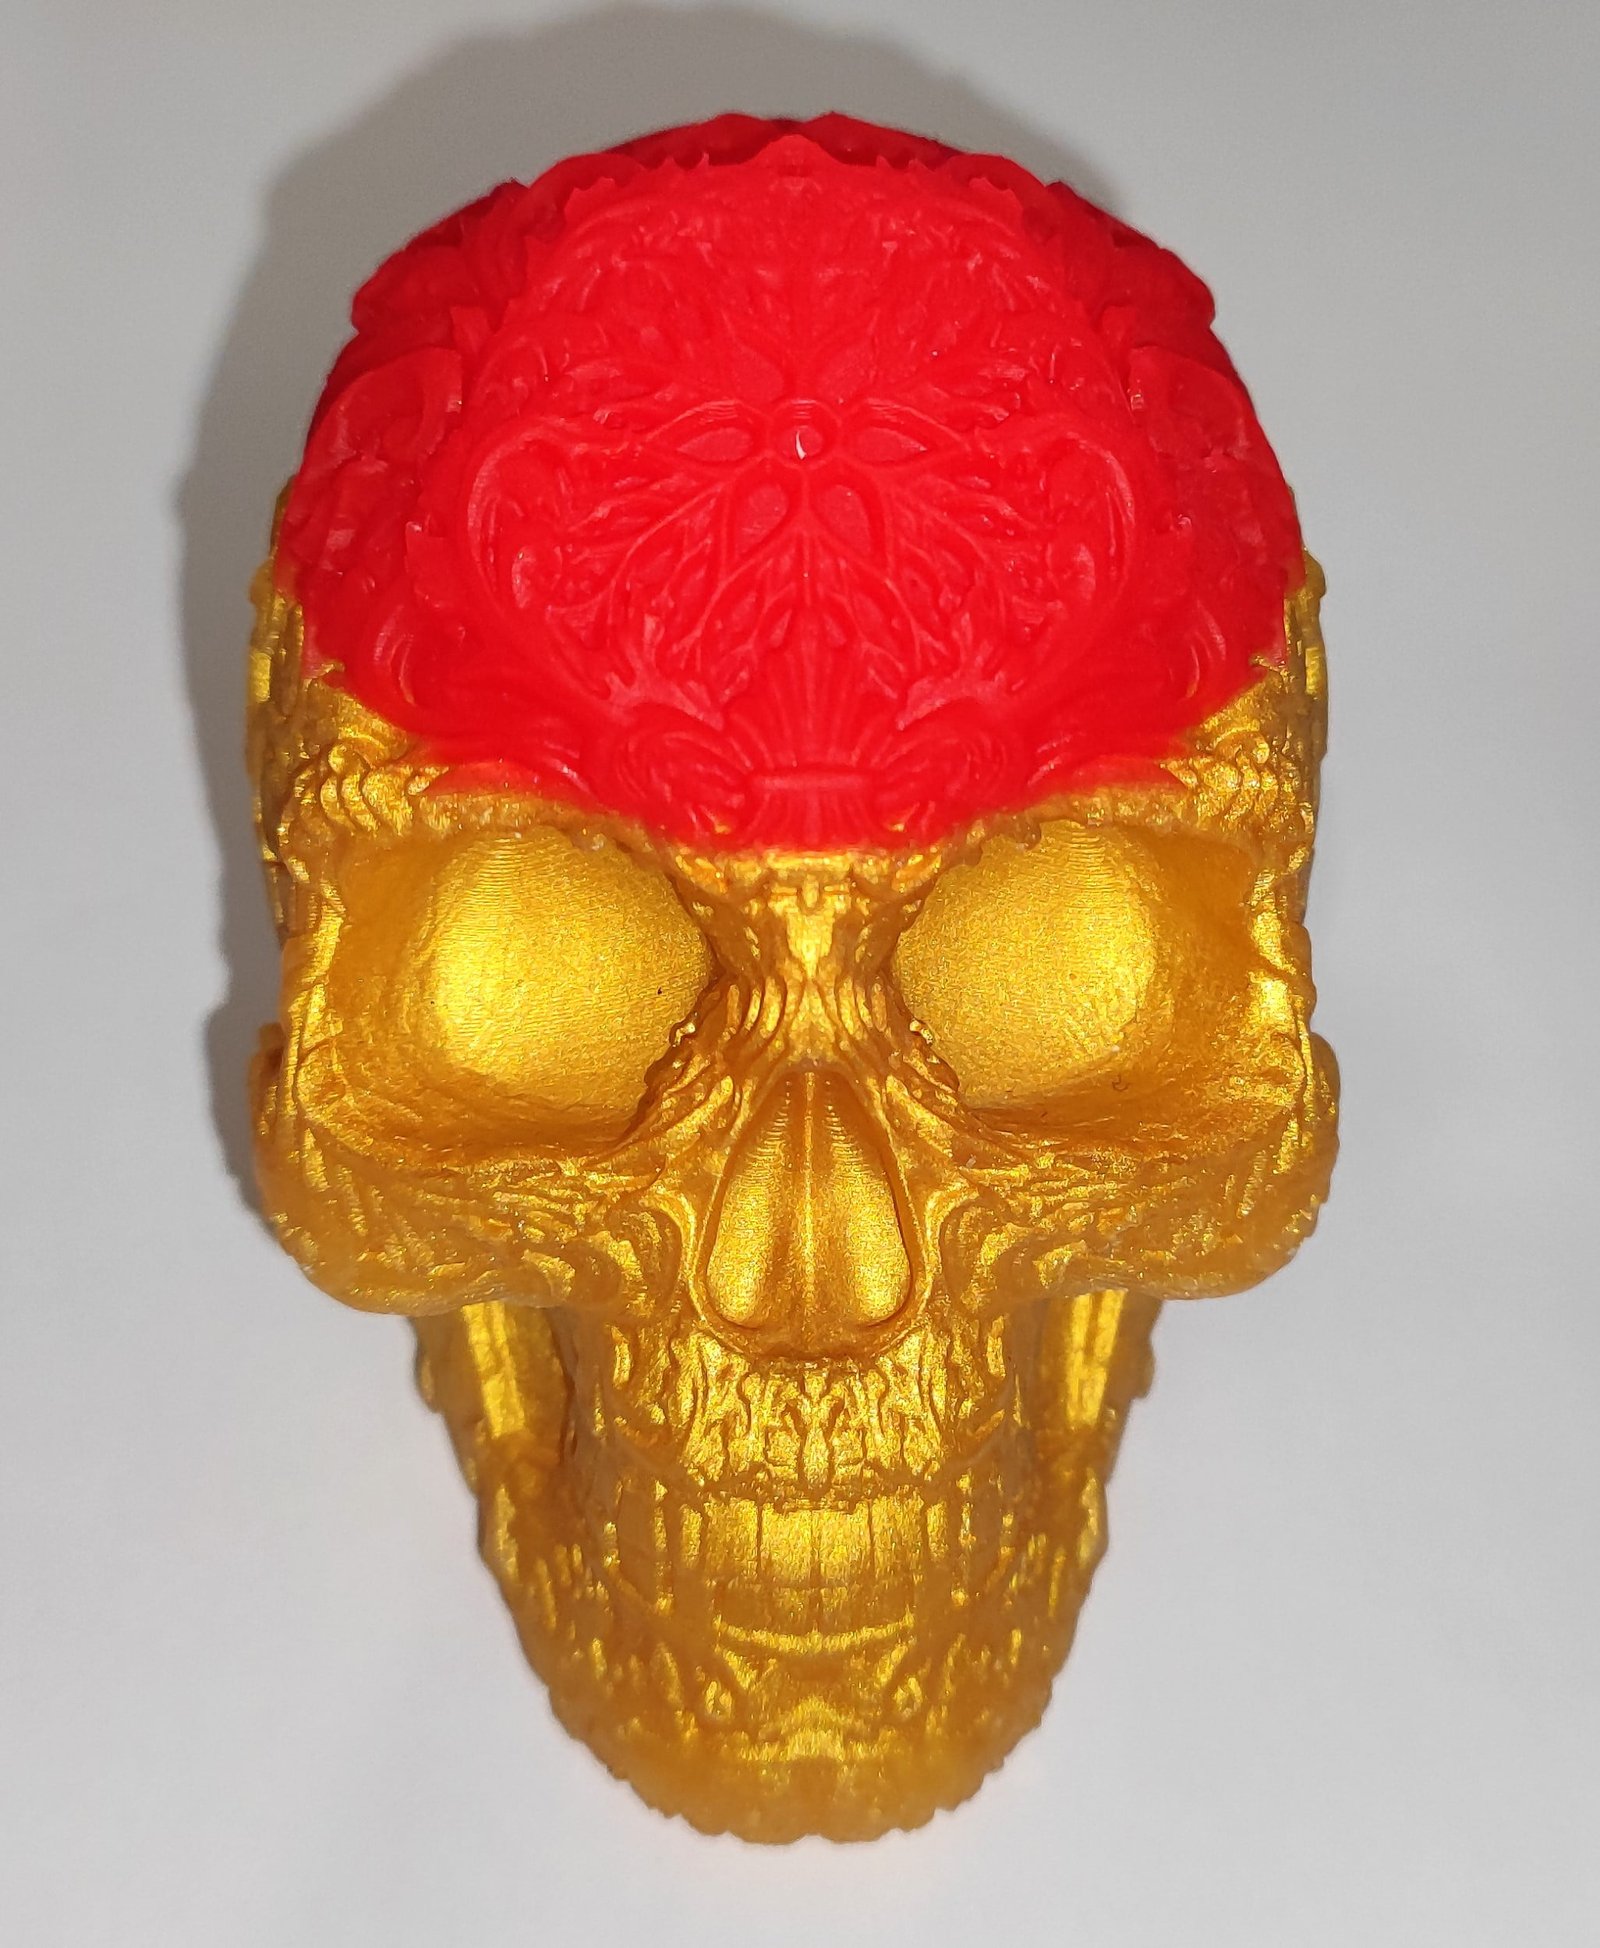 Décoration crâne skull doré nacré et rouge résine époxy